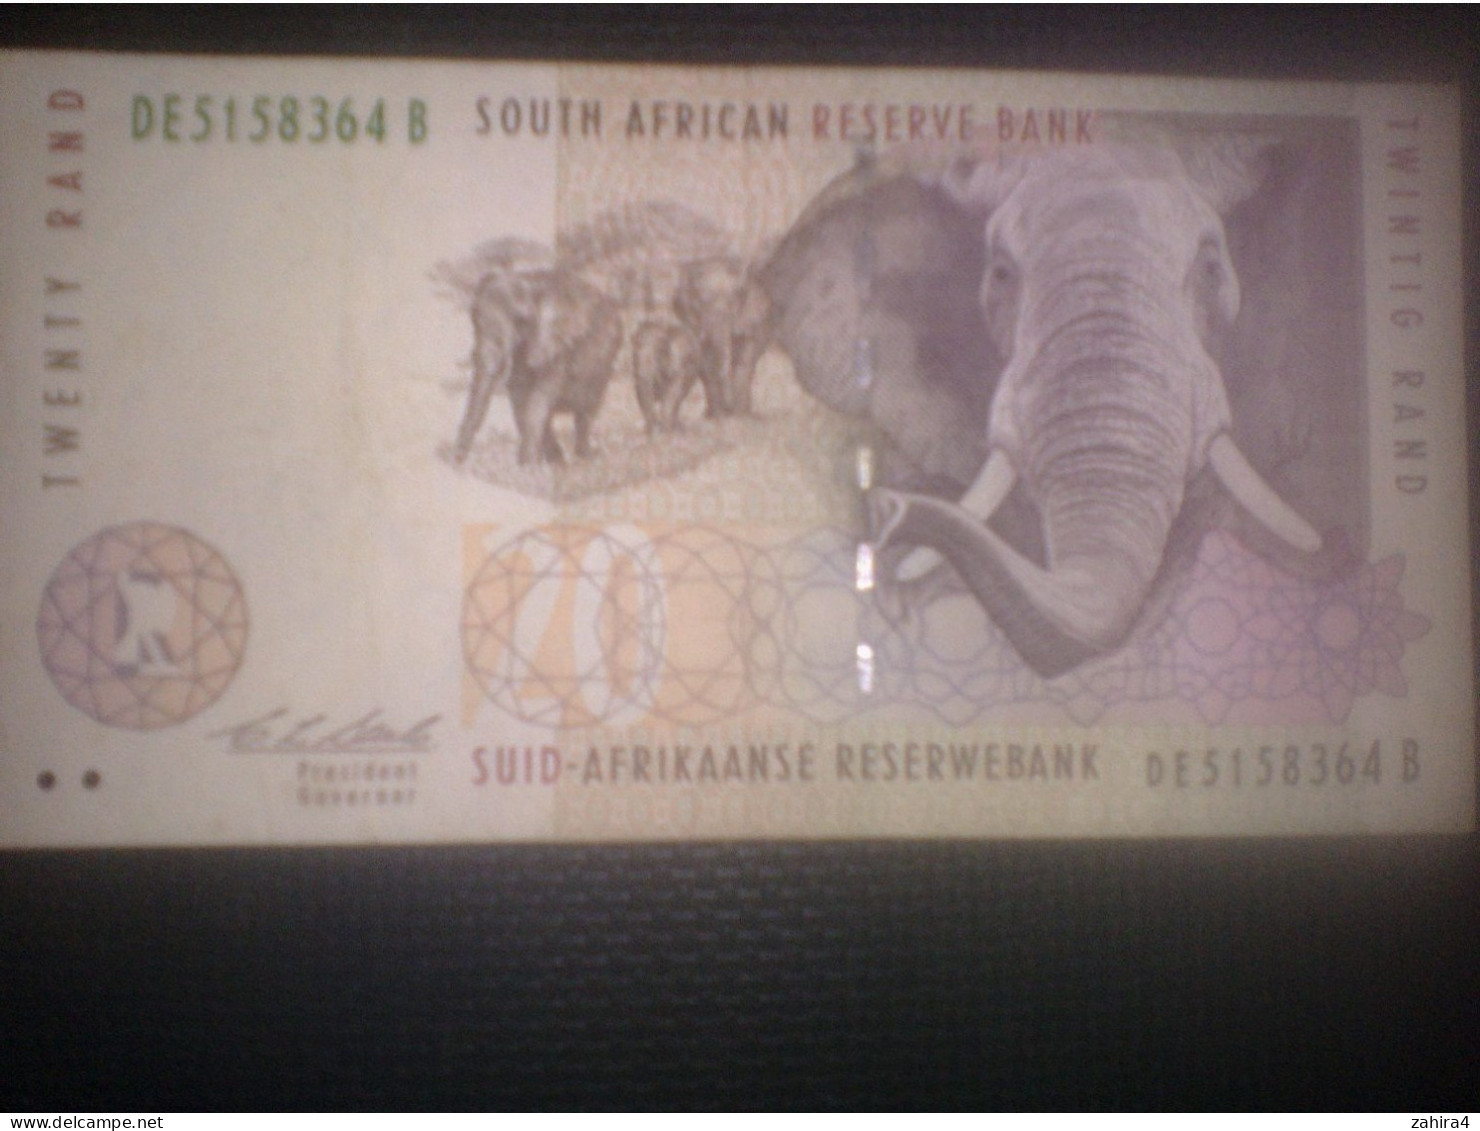 South Africa Reserve Bank - 20 - Twenty Rand - DE5158364 B - Eléphants - Südafrika